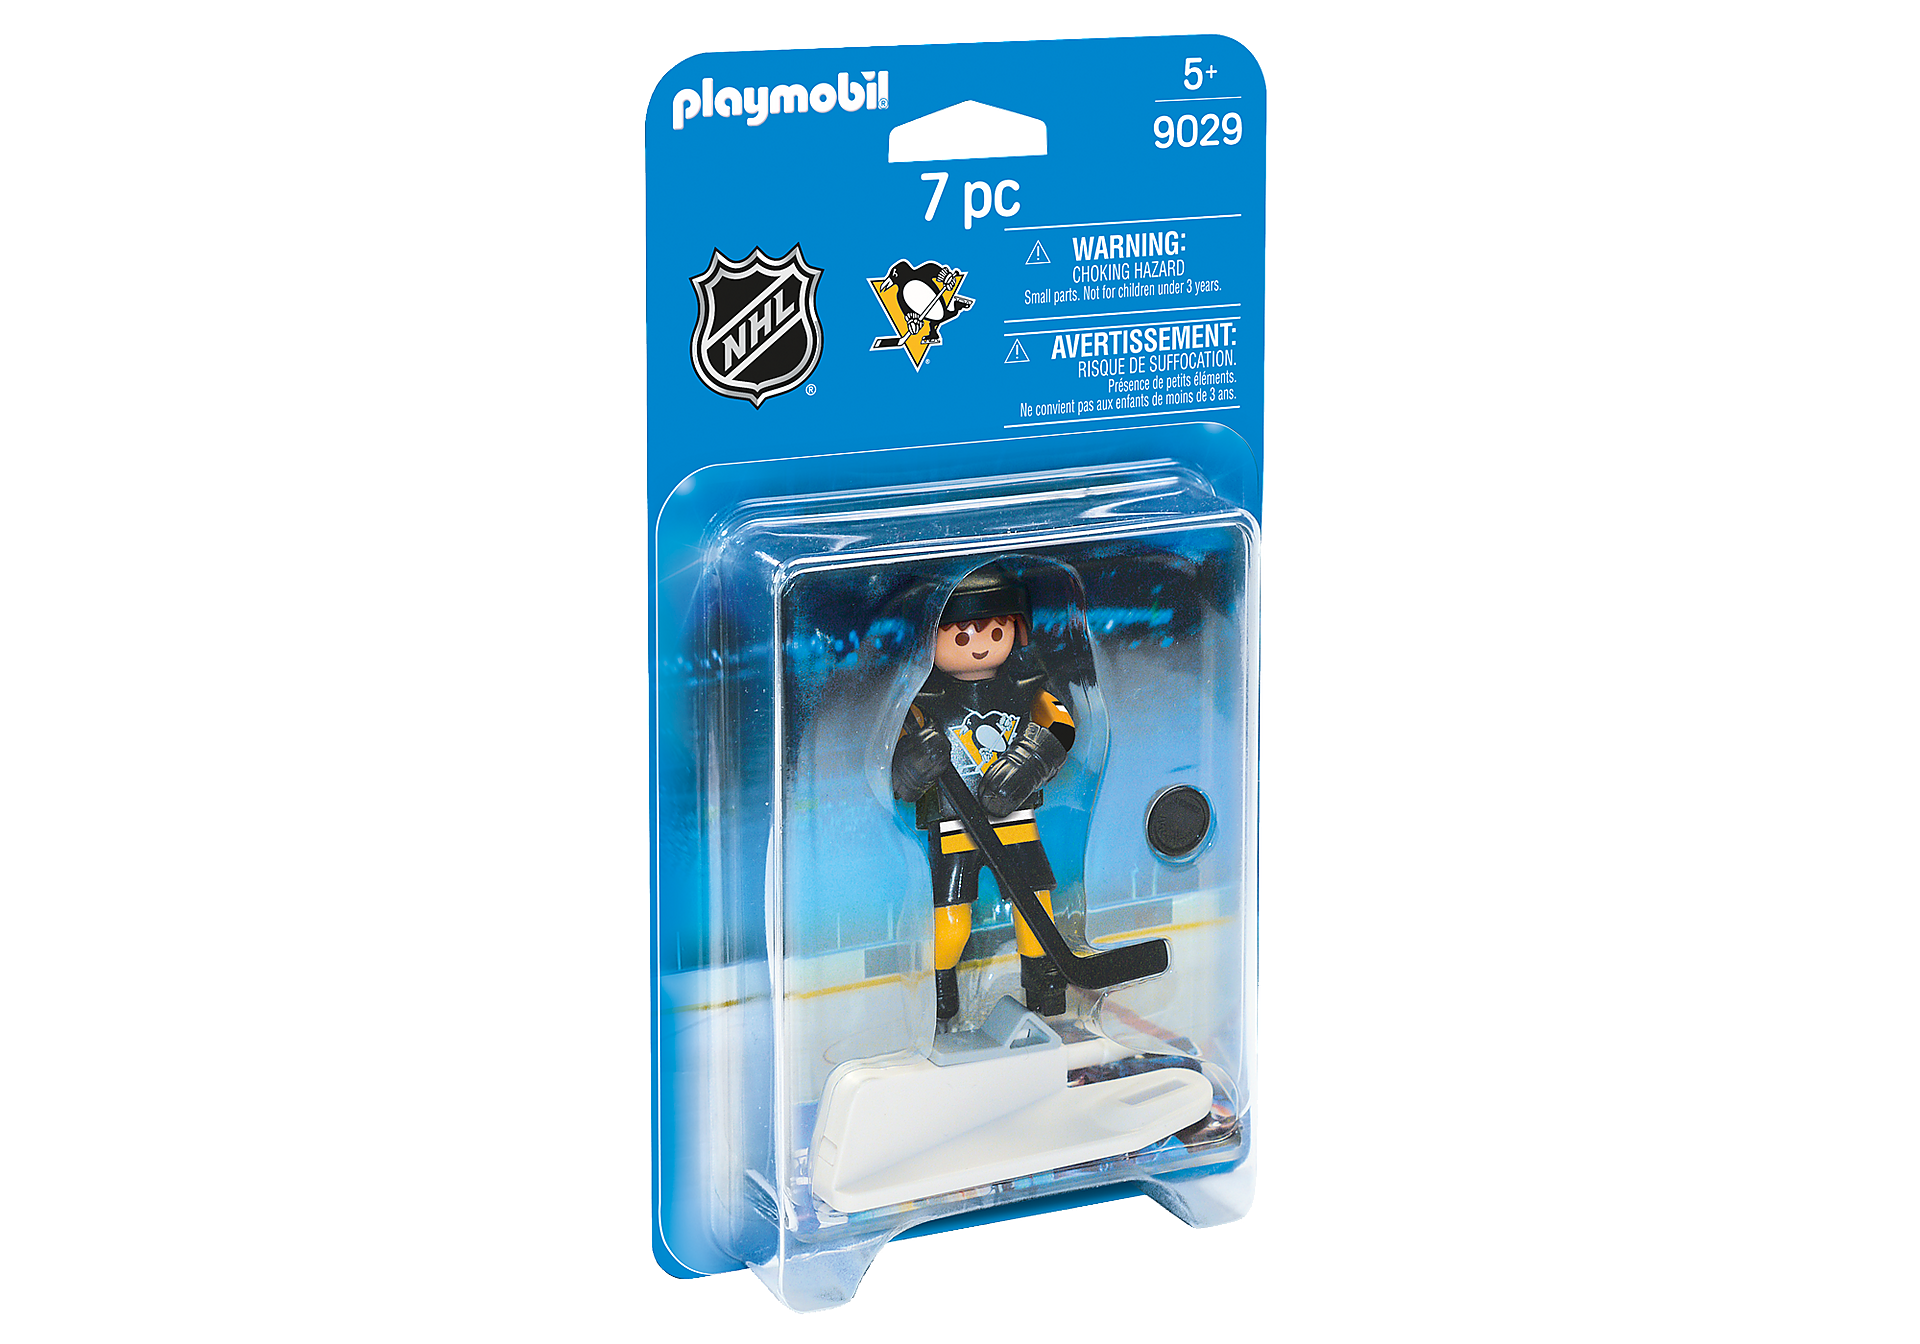 9029 NHL™ Pittsburgh Penguins™ joueur zoom image2